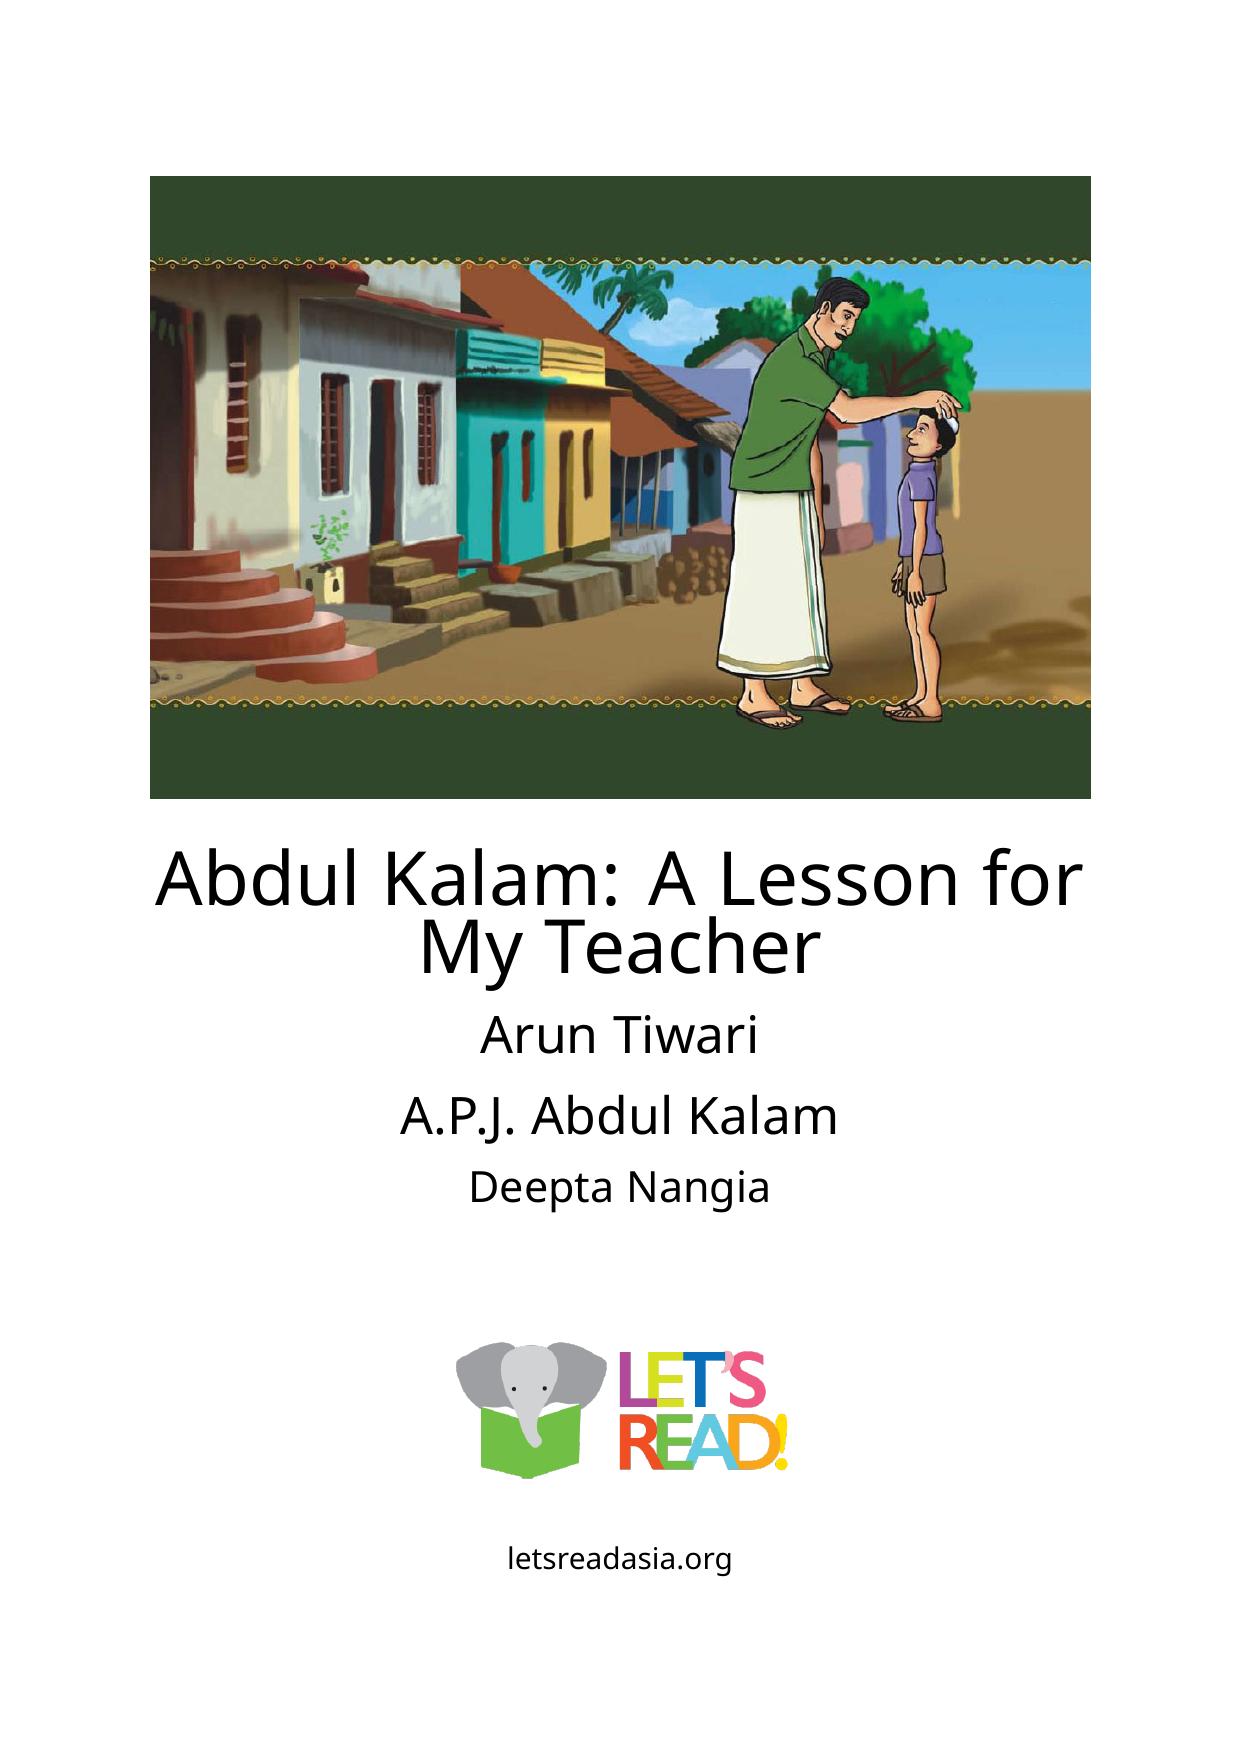 Abdul Kalam: A Lesson for My Teacher